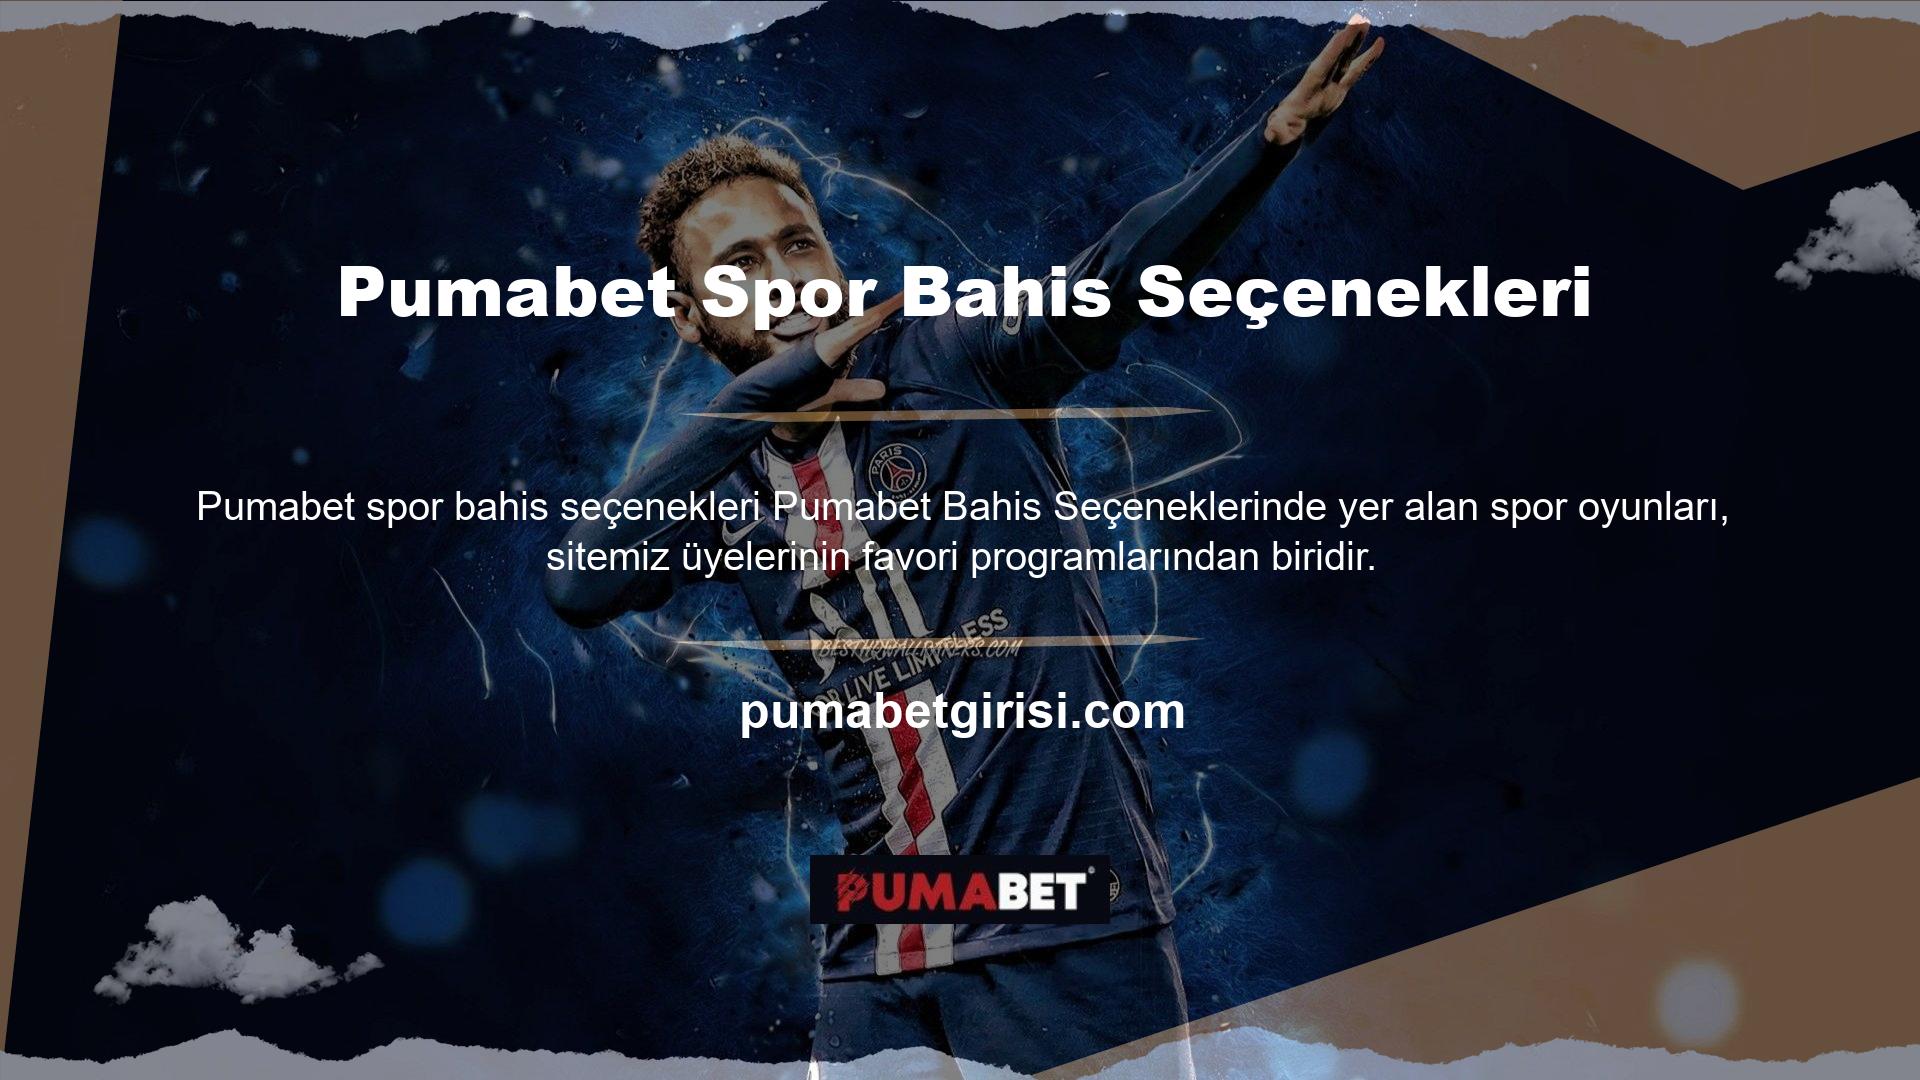 Öyle ki her yıl milyonlarca üye Pumabet web sitesinde spor etkinlikleri için kupon oluşturmaktadır